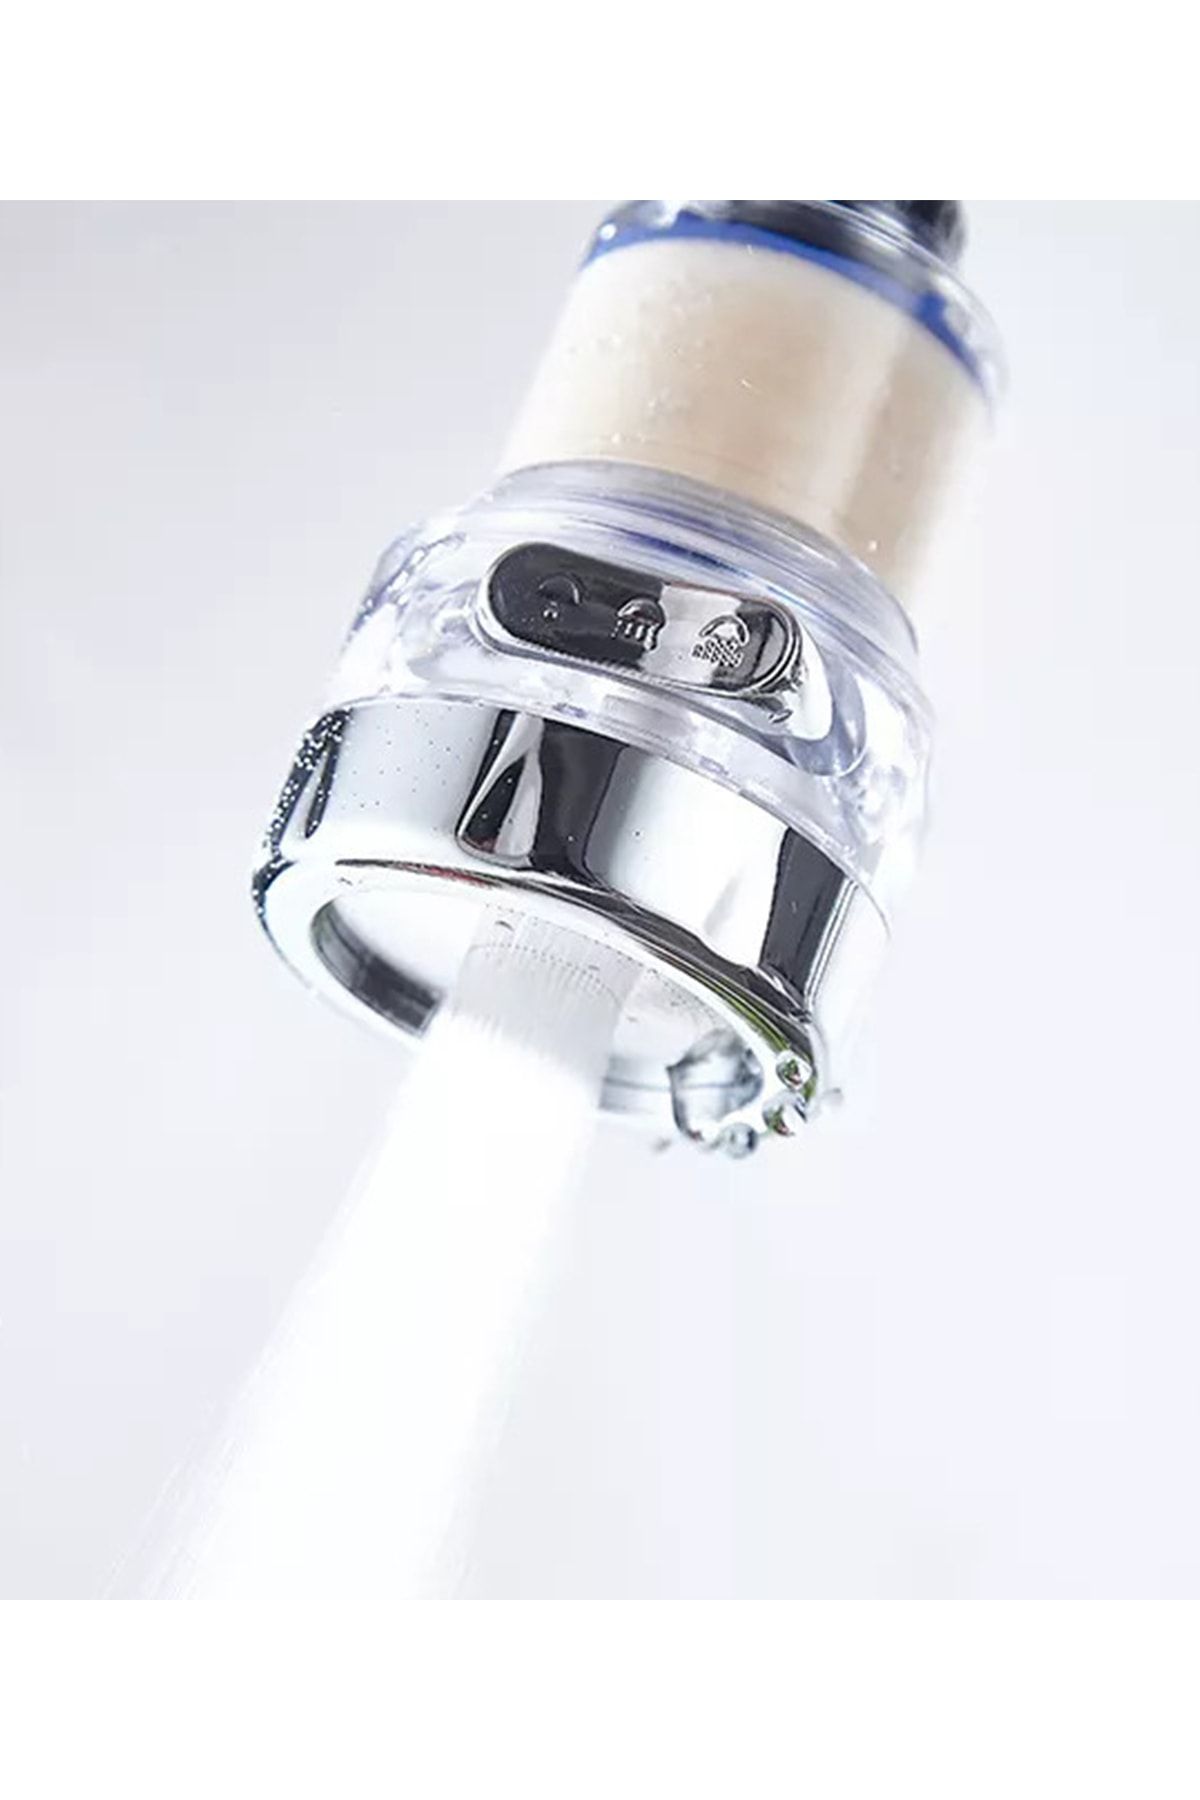 Kenji SWF 165 - Water Filter Shower Head